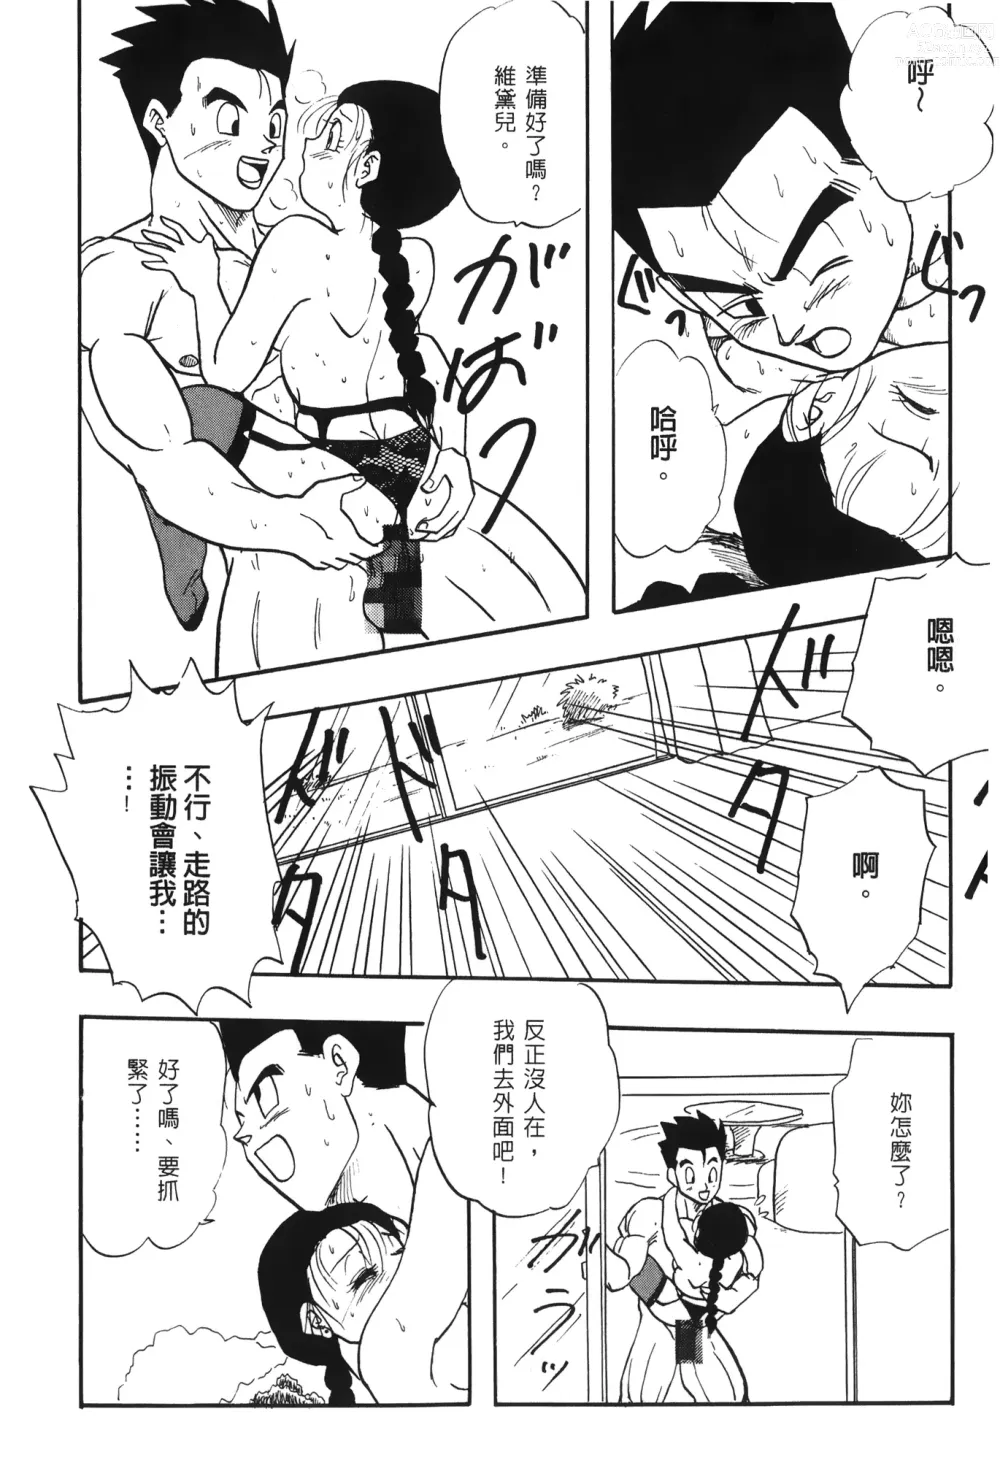 Page 156 of doujinshi ドラゴンパール 03